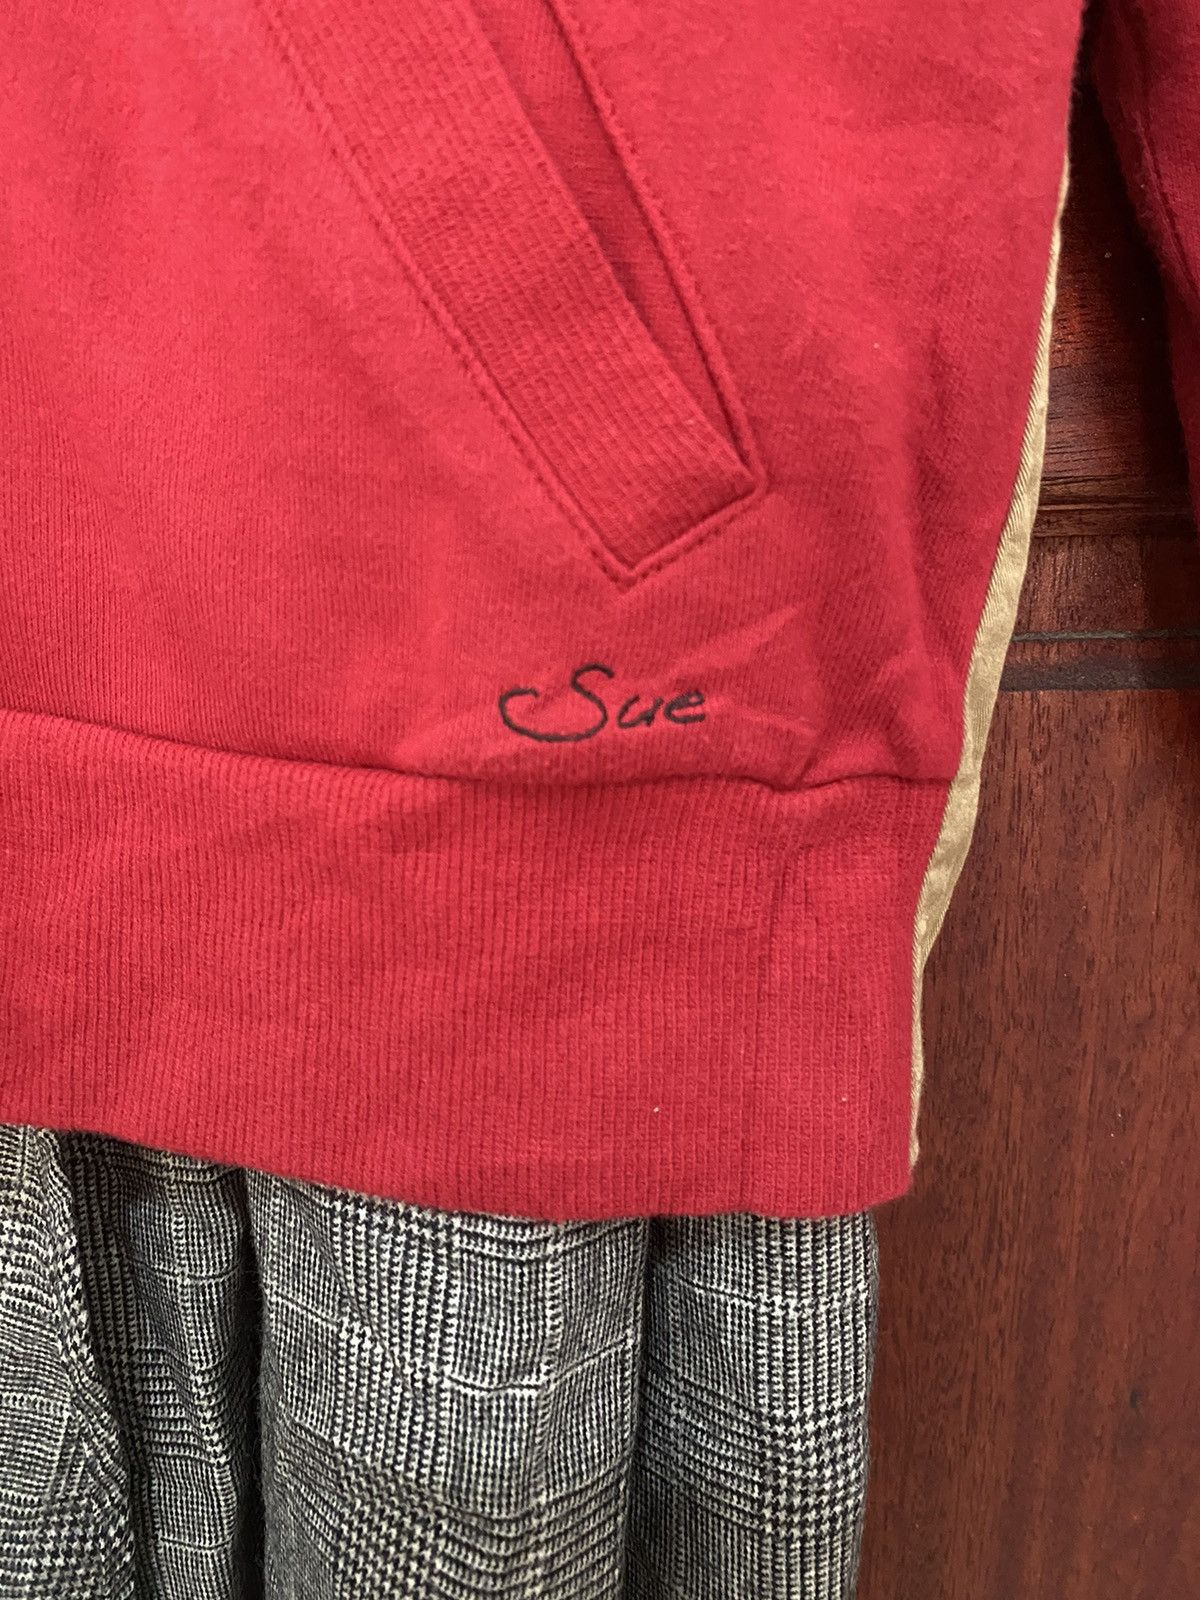 SueUNDERCOVER AW18 Cardigan Style Jacket - 8